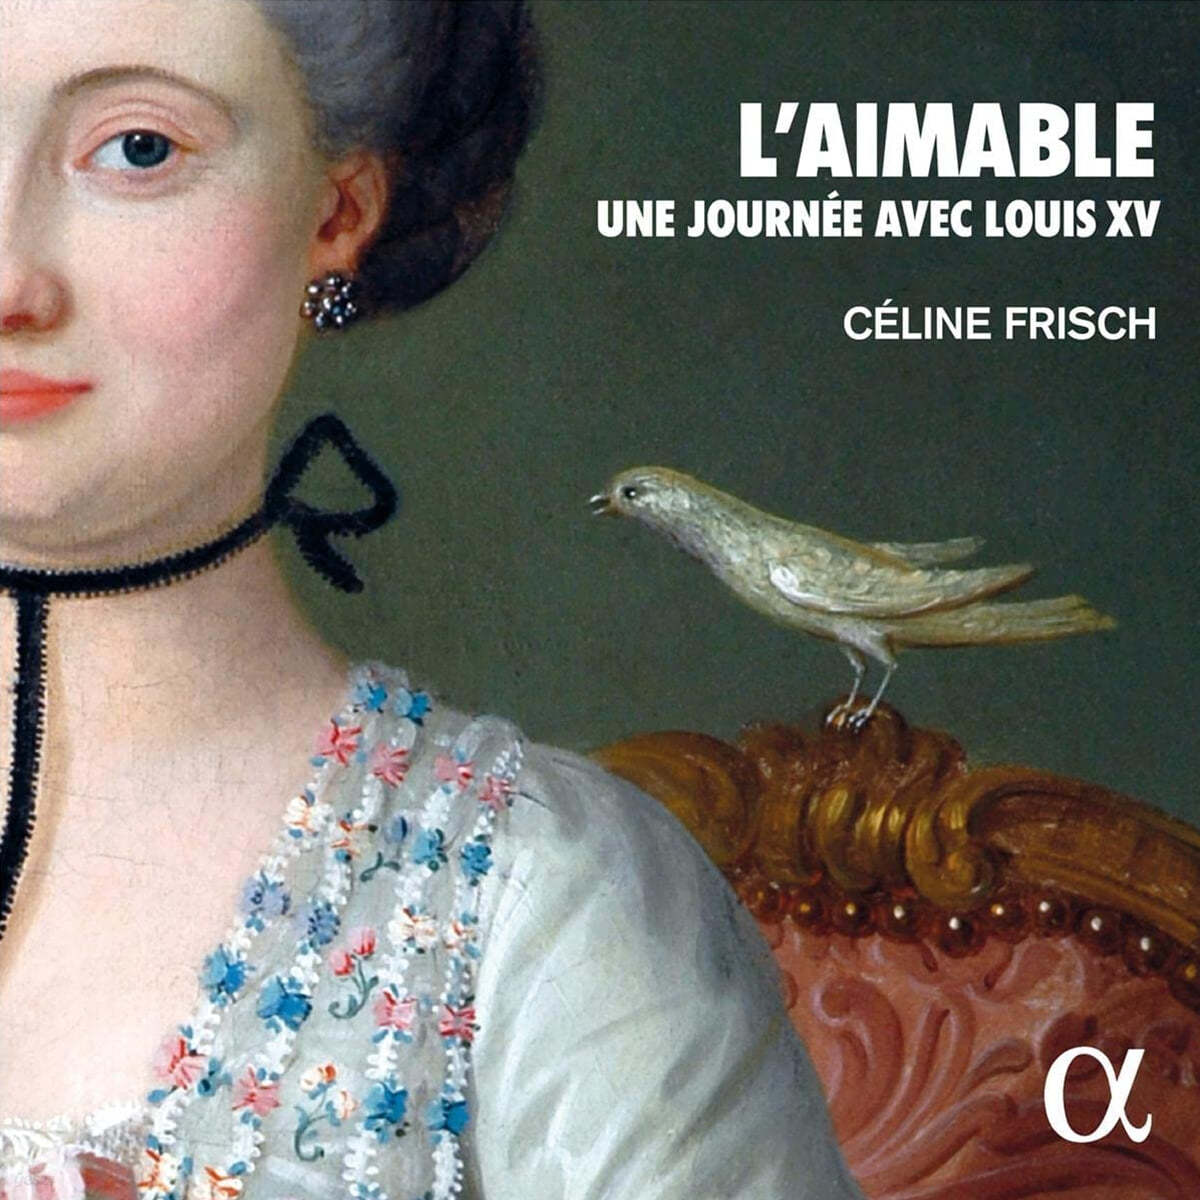 Celine Frisch 루이 15세 시대의 하프시코드 음악 (L'aimable. Une journee avec Louis XV)